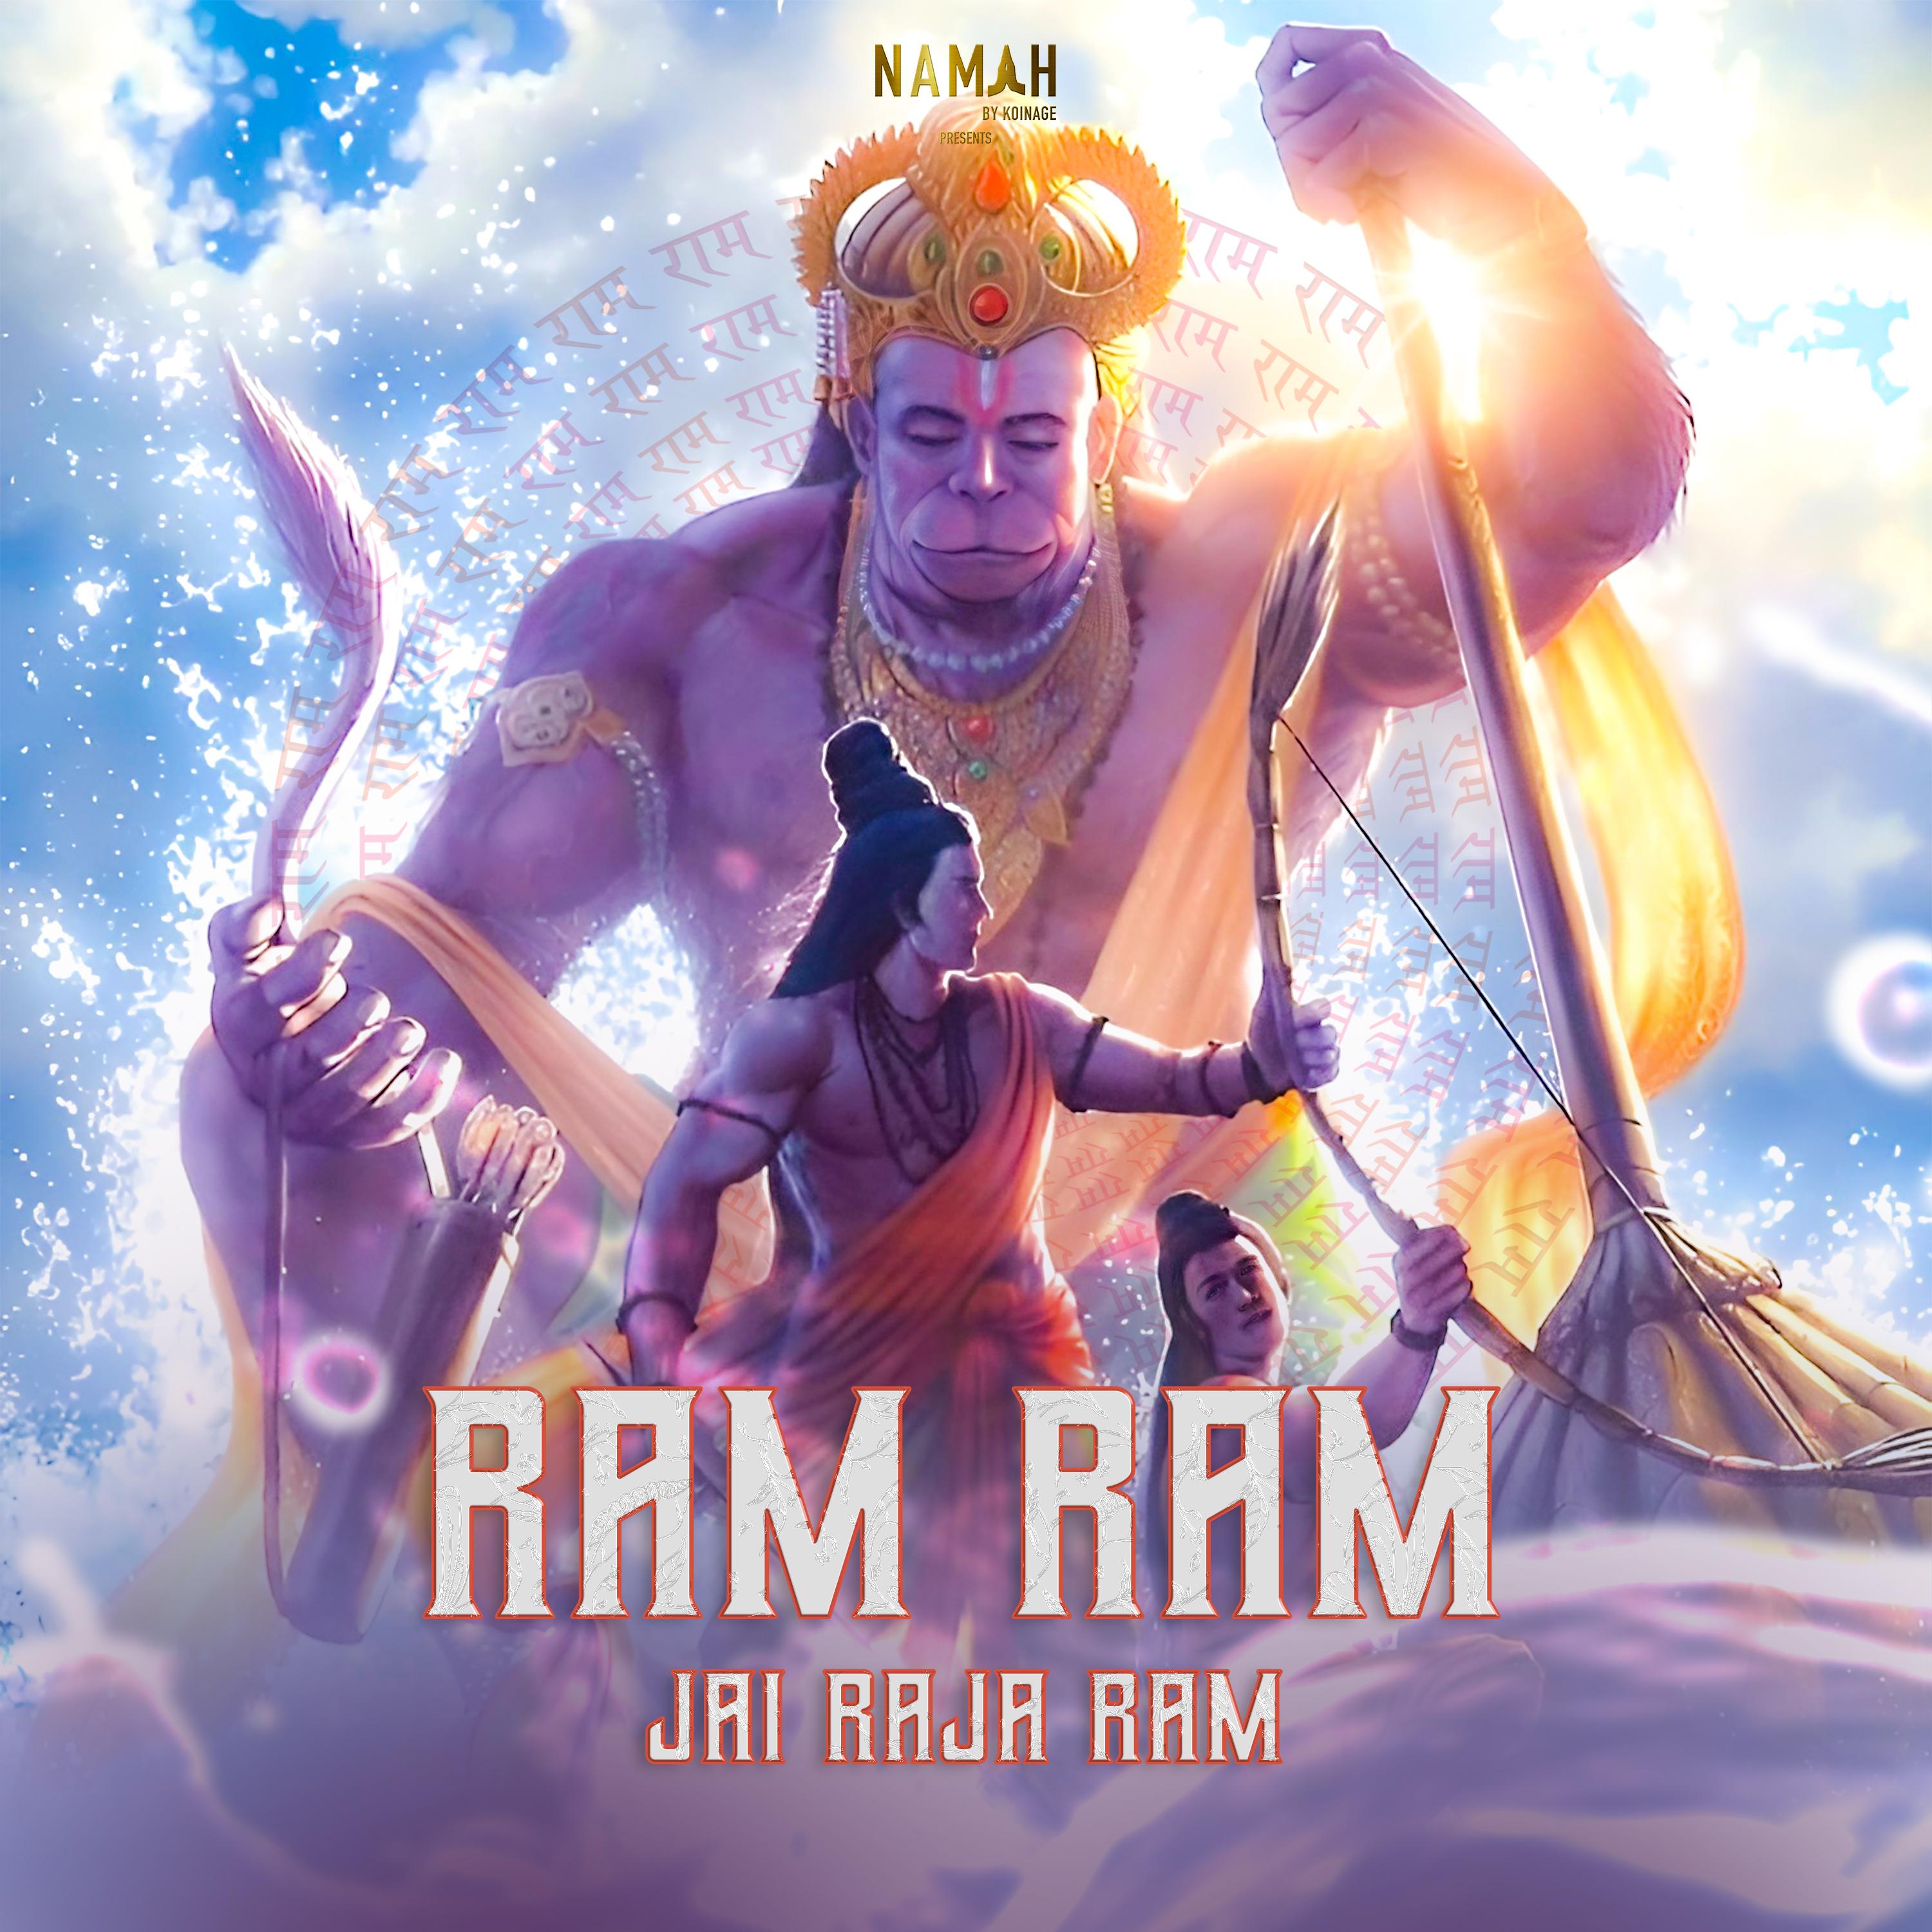 Sadhana Sargam - Ram Ram Jai Raja Ram